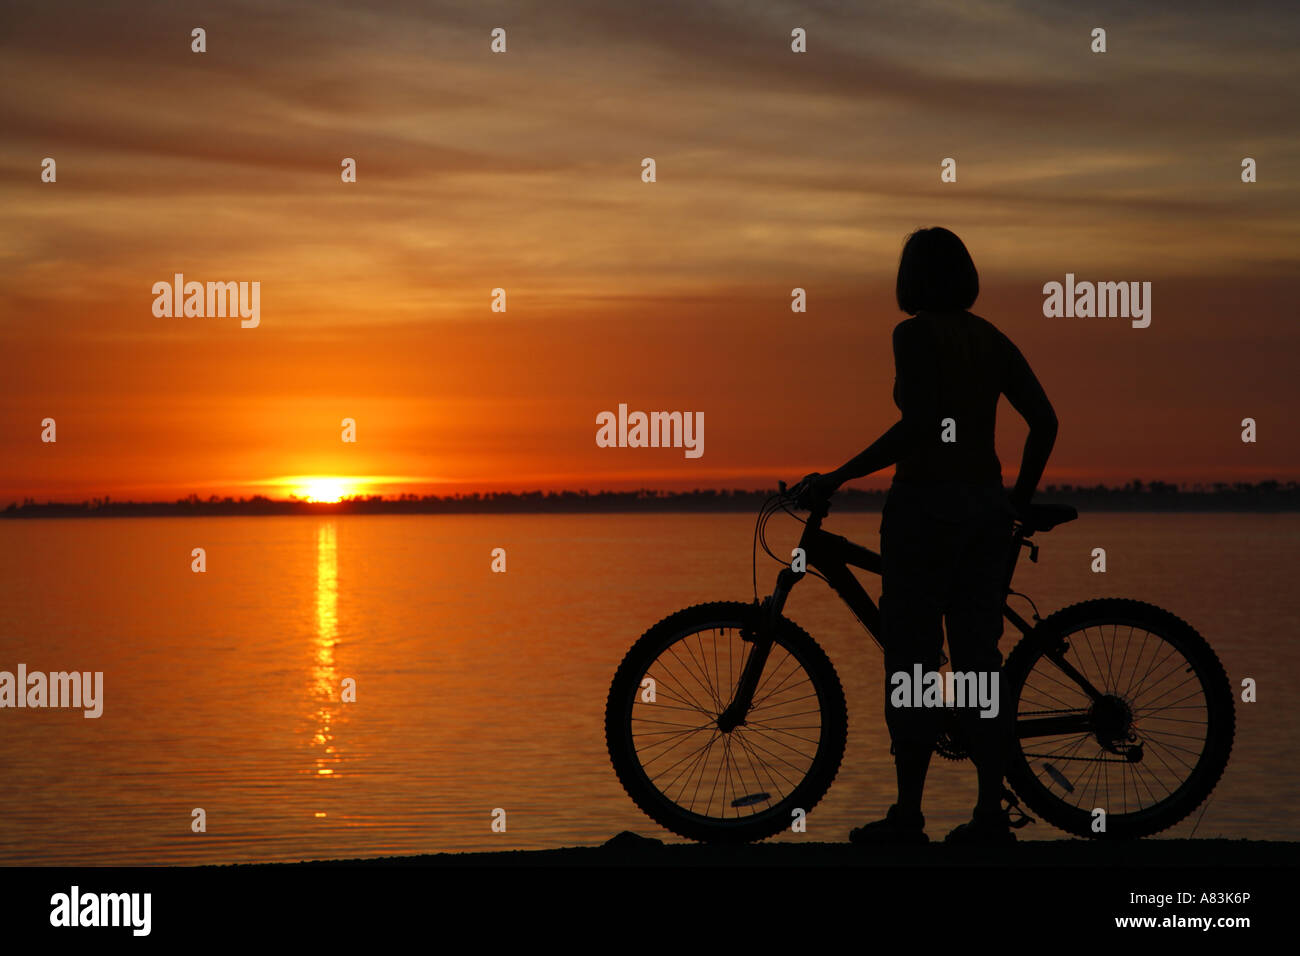 Un visiteur avec son vélo au coucher du soleil le long de la baie de San Diego Chula Vista modèle californien publié Banque D'Images